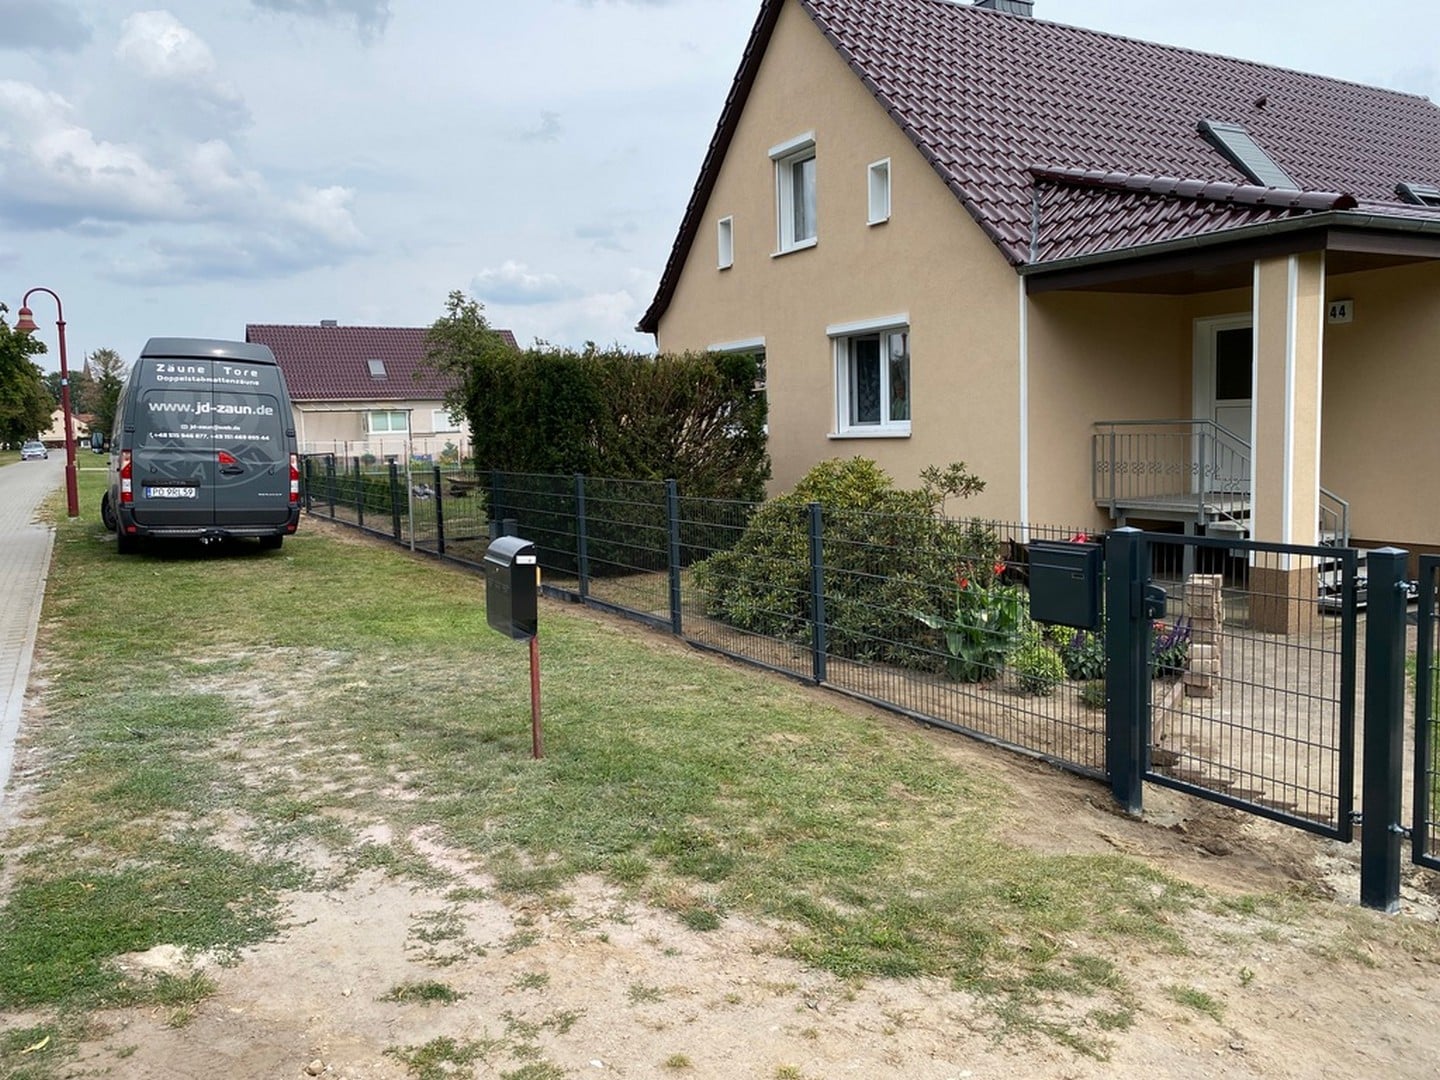 Wohnhaus mit Zaun und Lieferwagen in Deutschland.